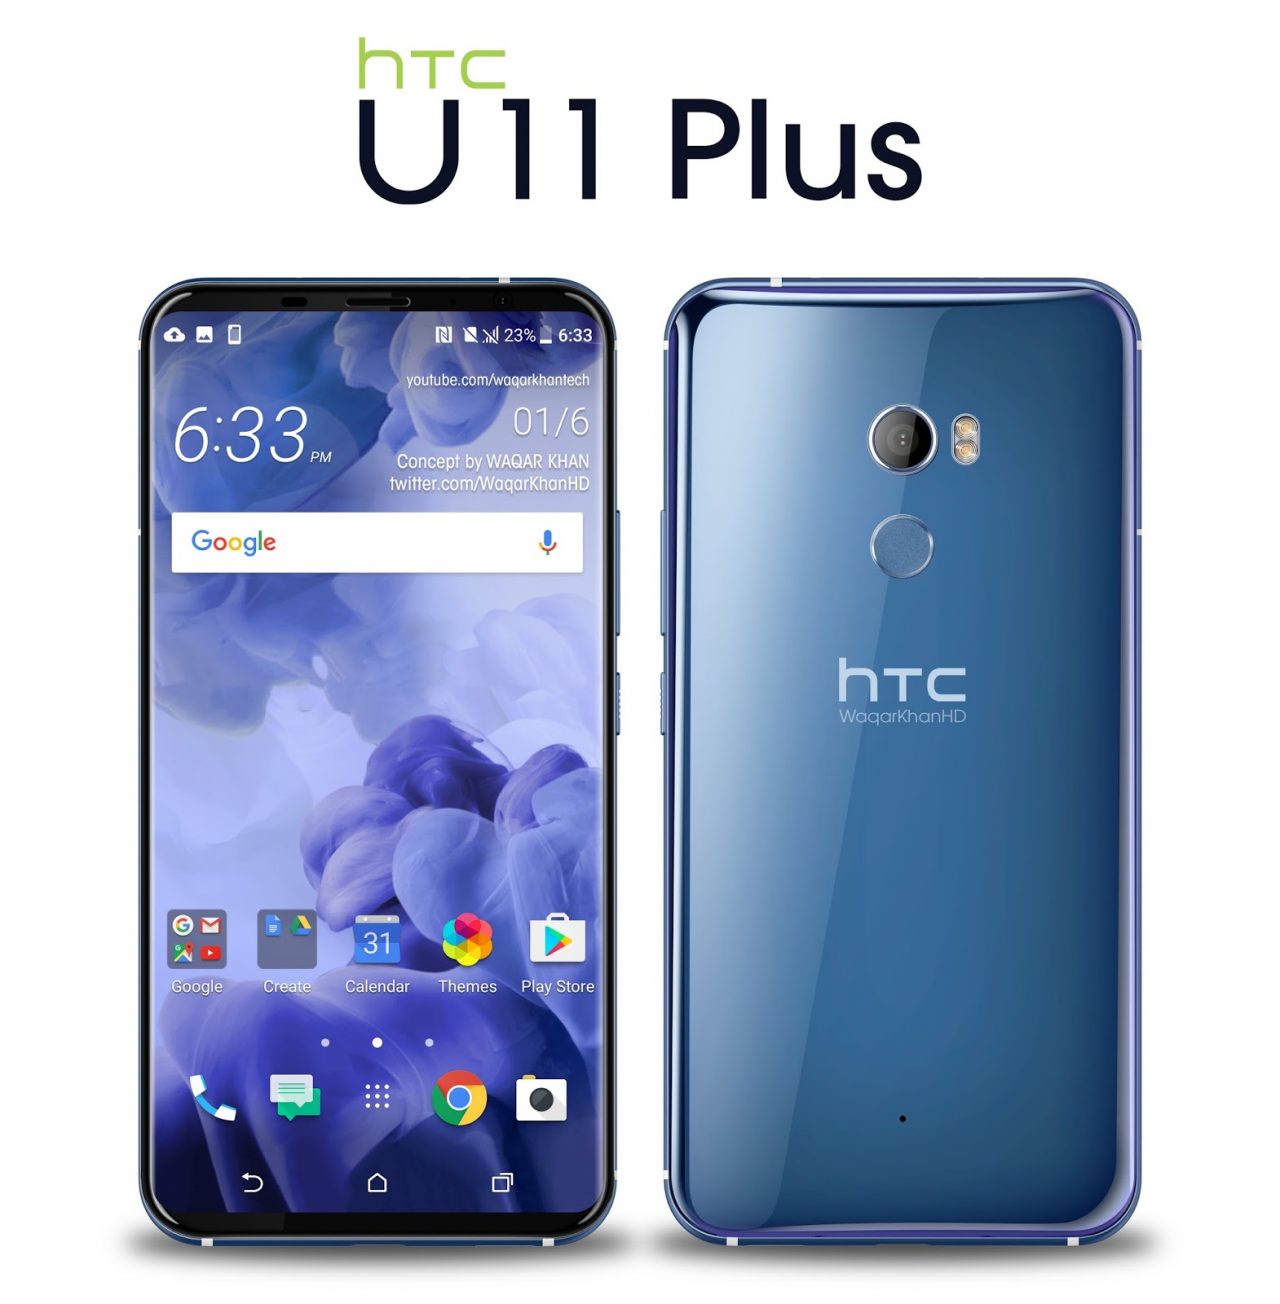 HTC U11 Plus prawdopodobnie wyjdzie pod koniec tego roku